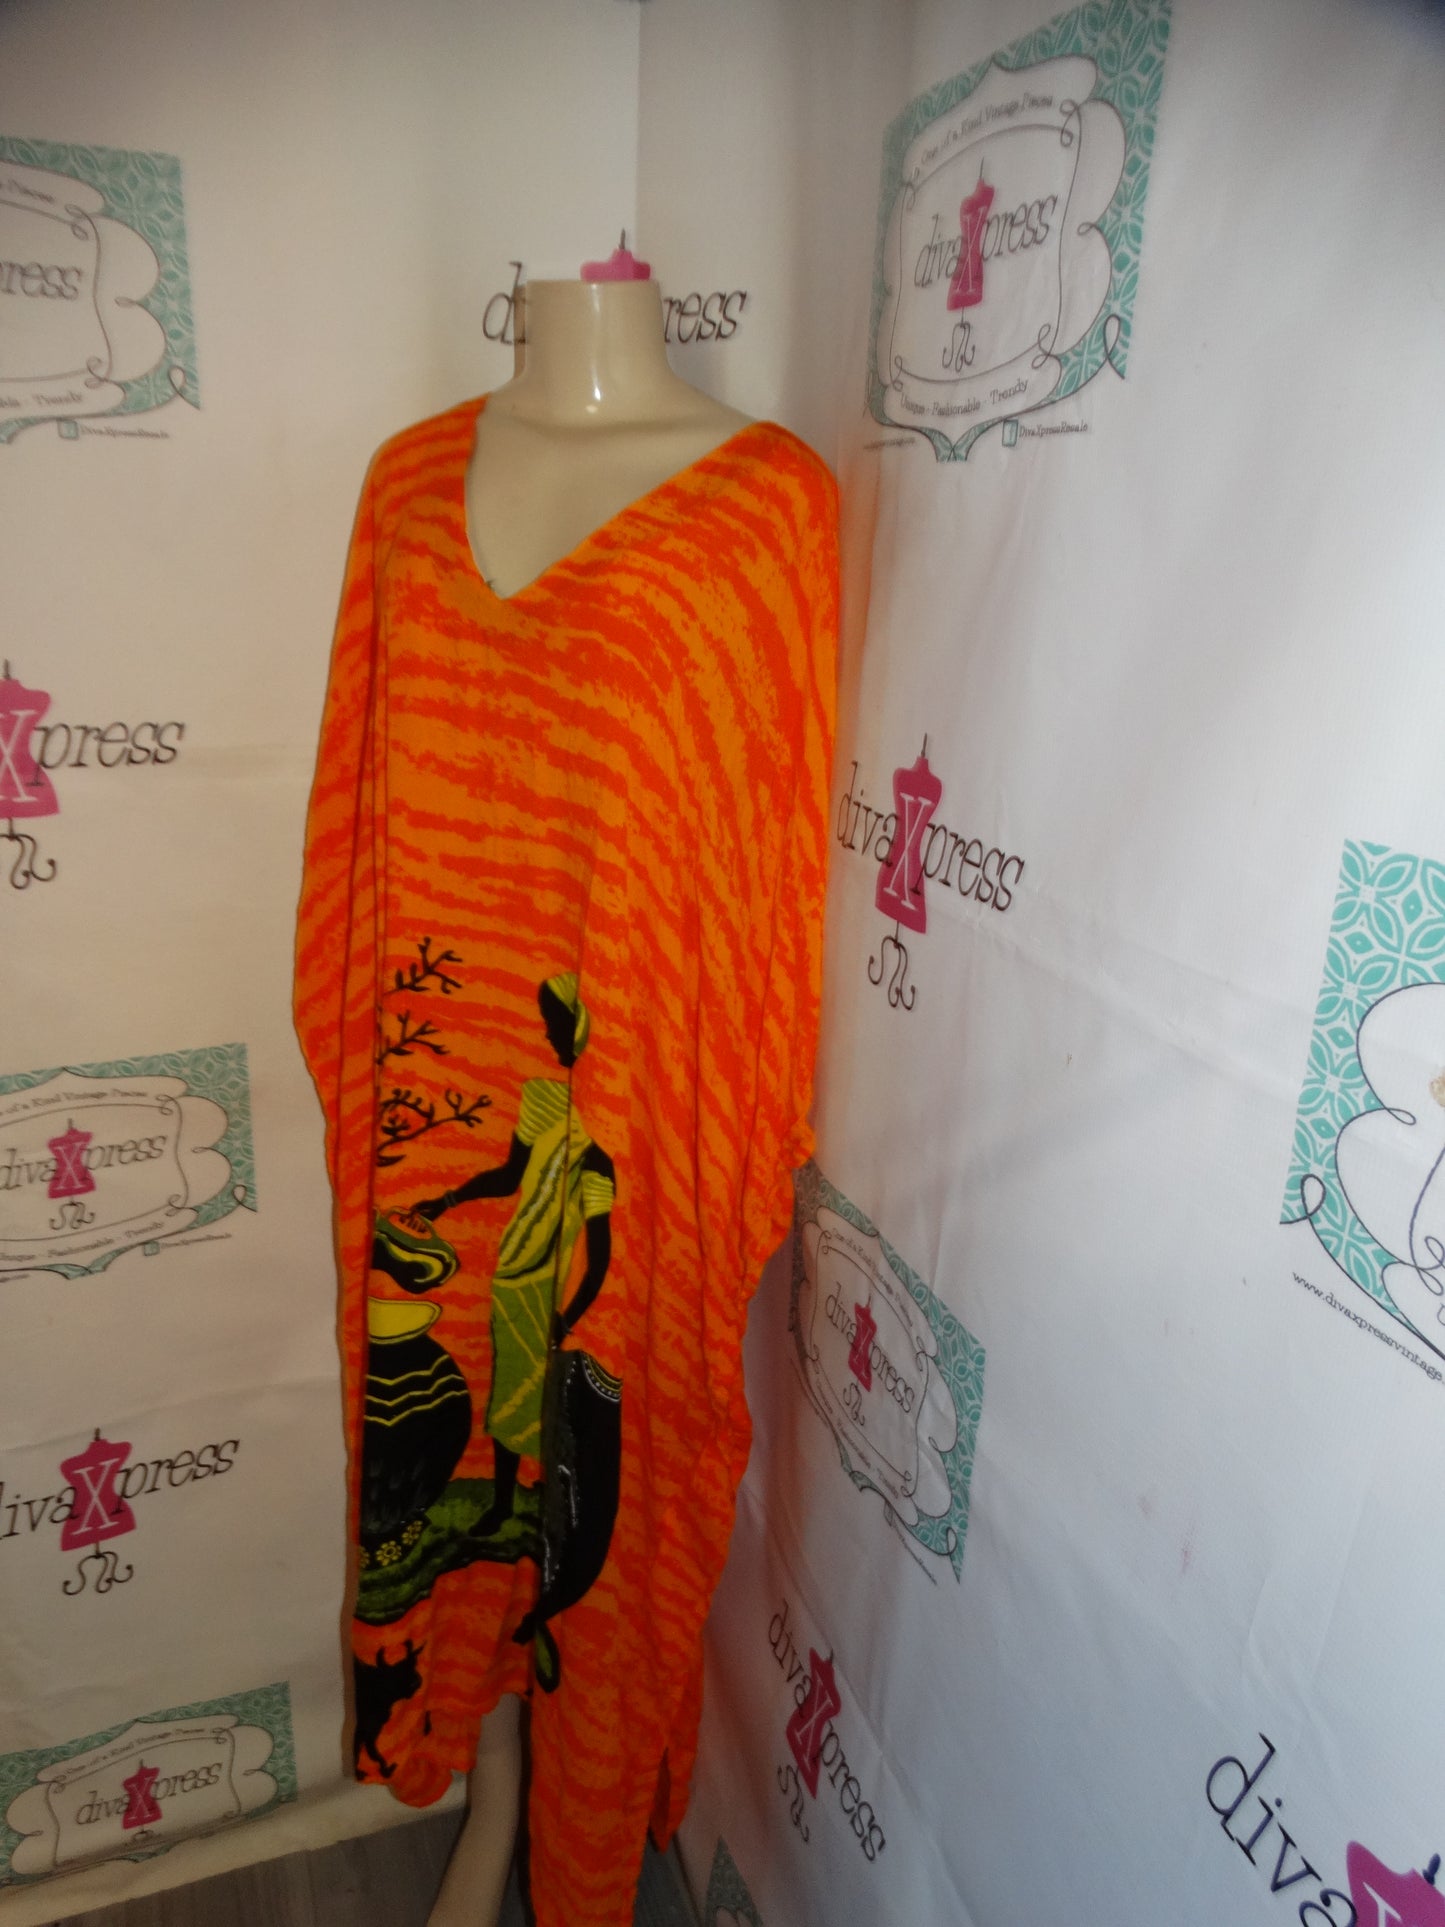 Vintage Sante  Orange Print Dress Size 3x